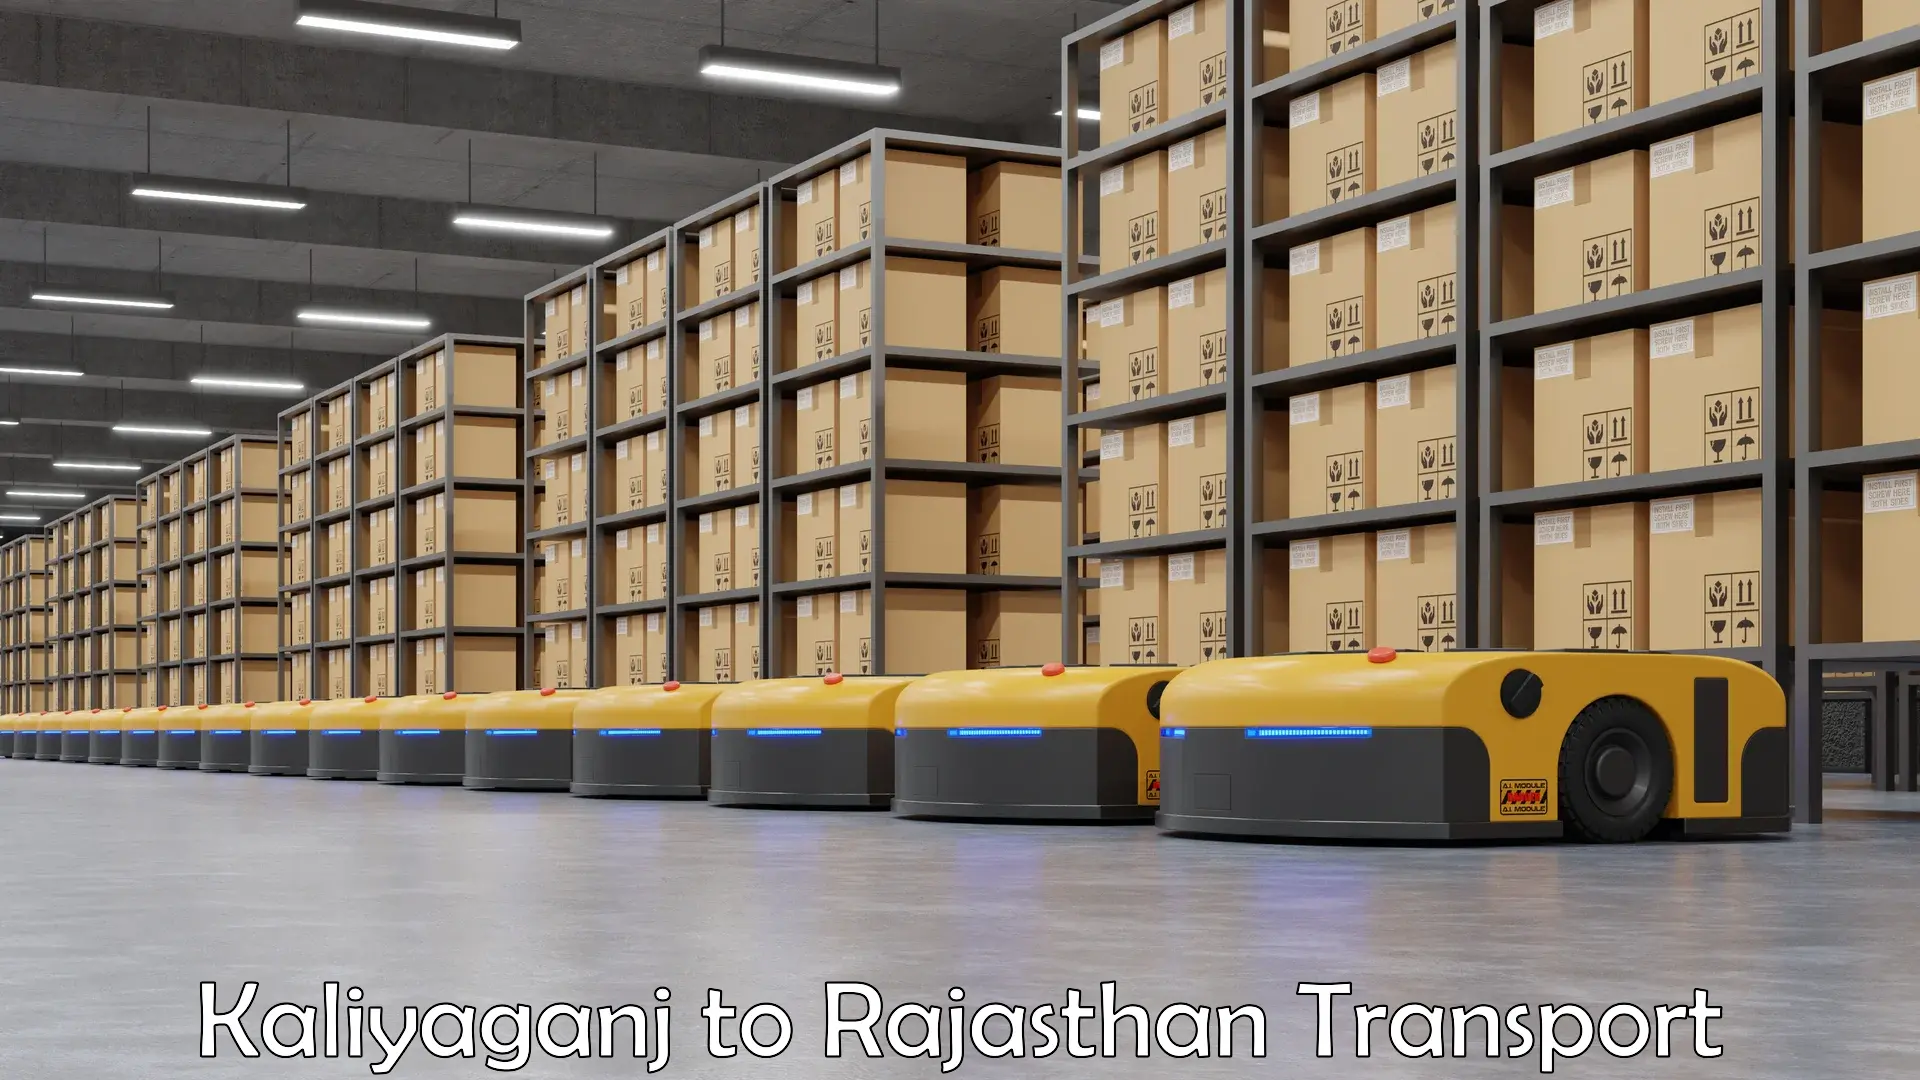 Container transport service Kaliyaganj to Rajasthan